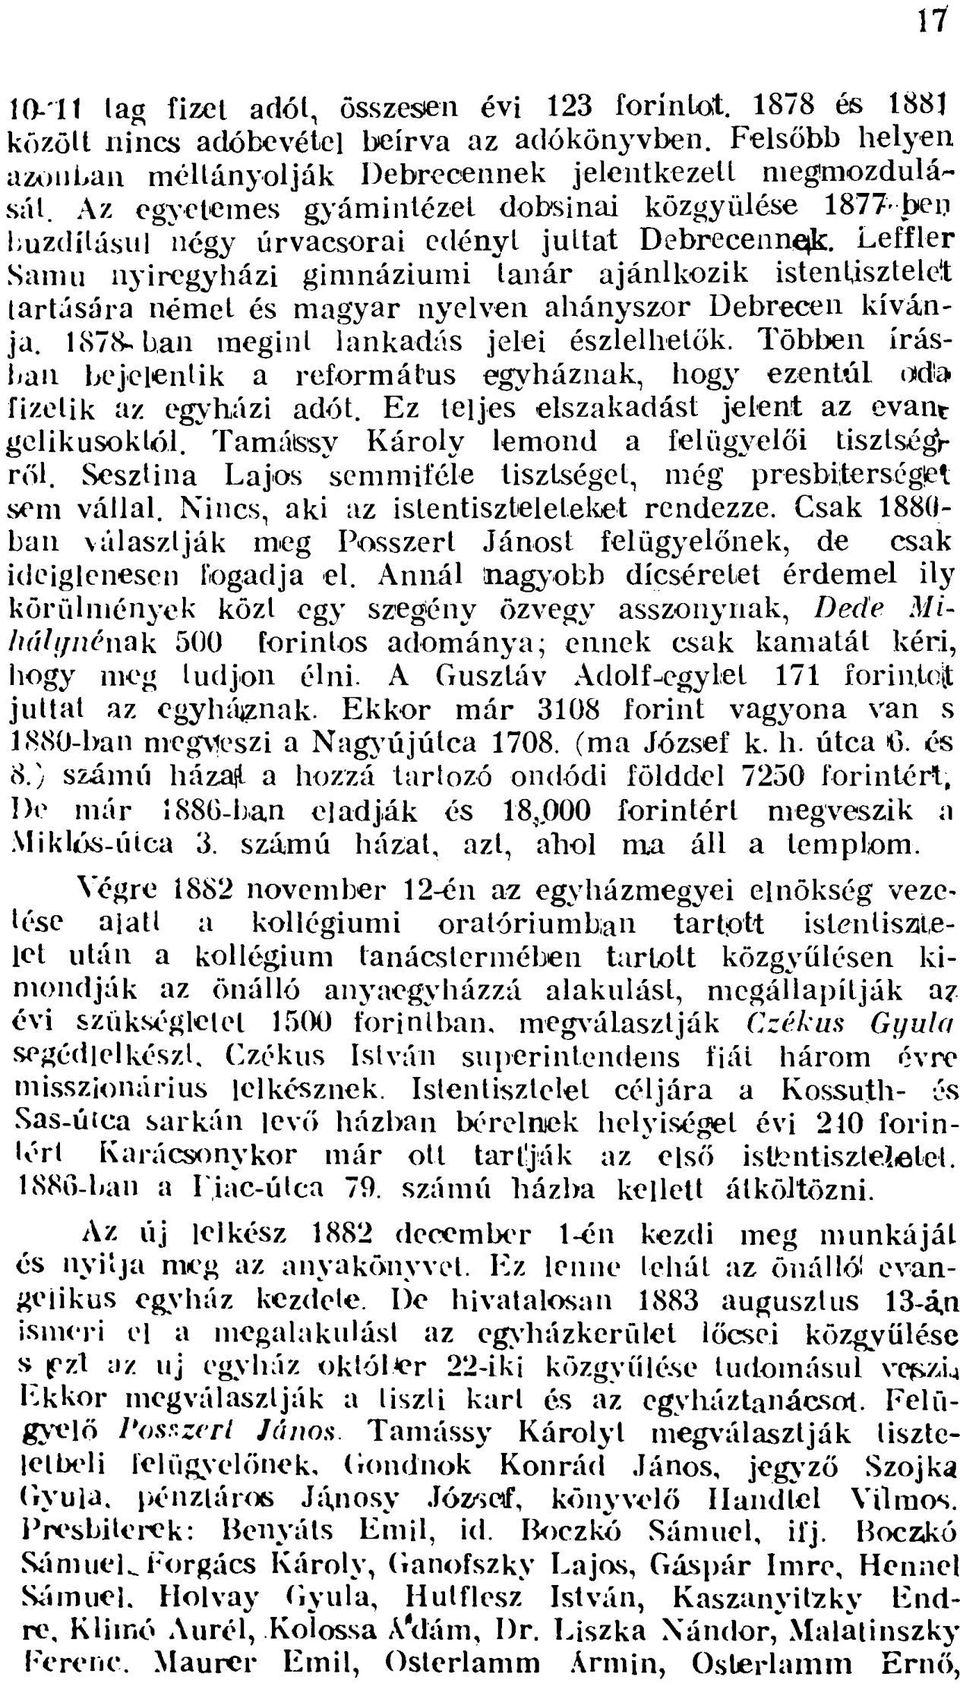 Leffler Samu nyíregyházi gimnáziumi tanár ajánlkozik istentisztelet tartására német és magyar nyelven ahányszor Debrecen kívánja. 1878-ban megint lankadás jelei észlelhetők.